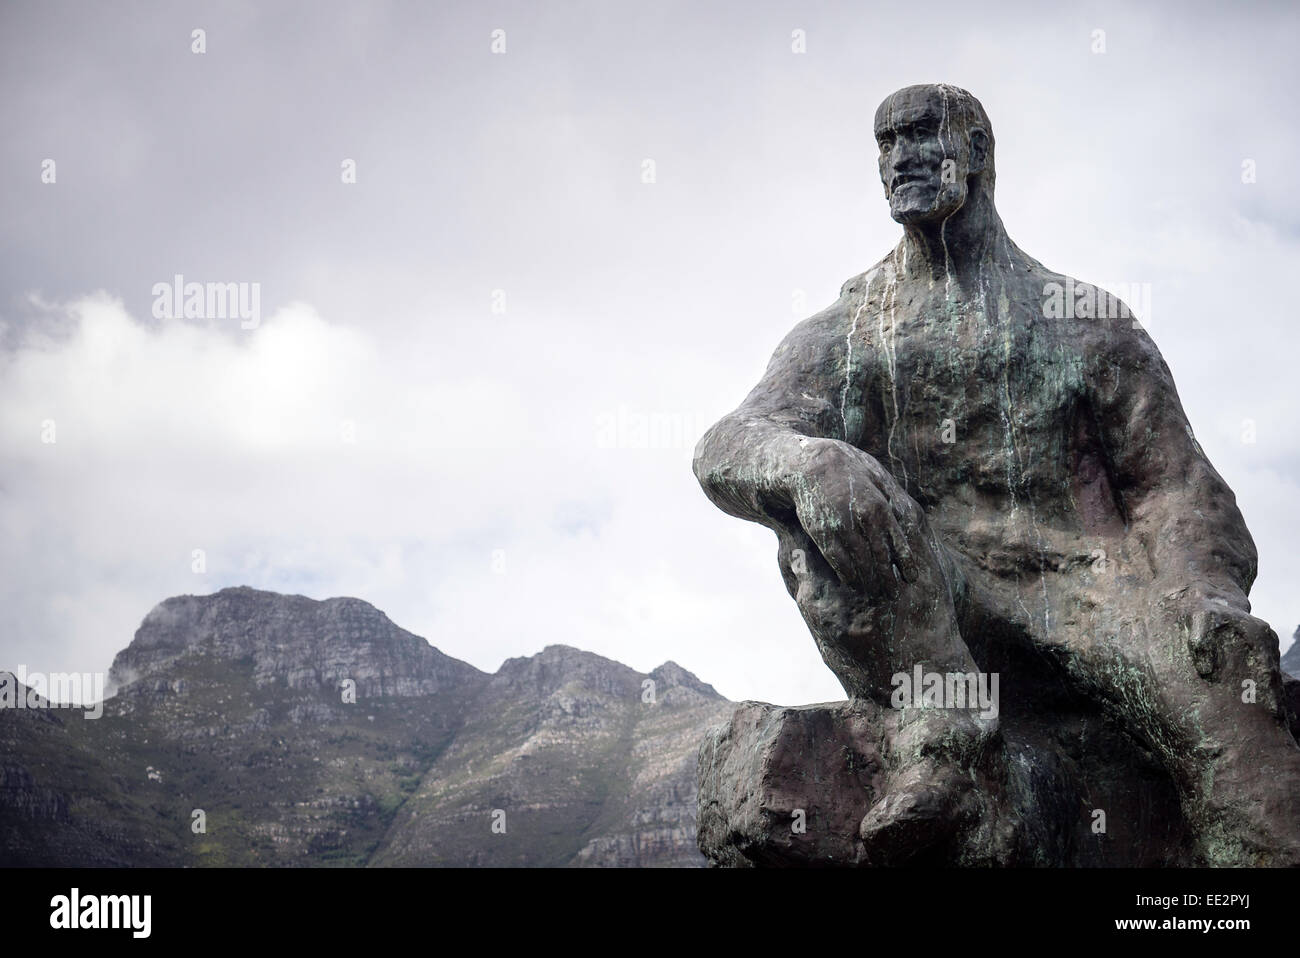 La statue de Jan Smuts, dans le jardin, Cape Town, Afrique du Sud, avec la Montagne de la table en arrière-plan. Banque D'Images